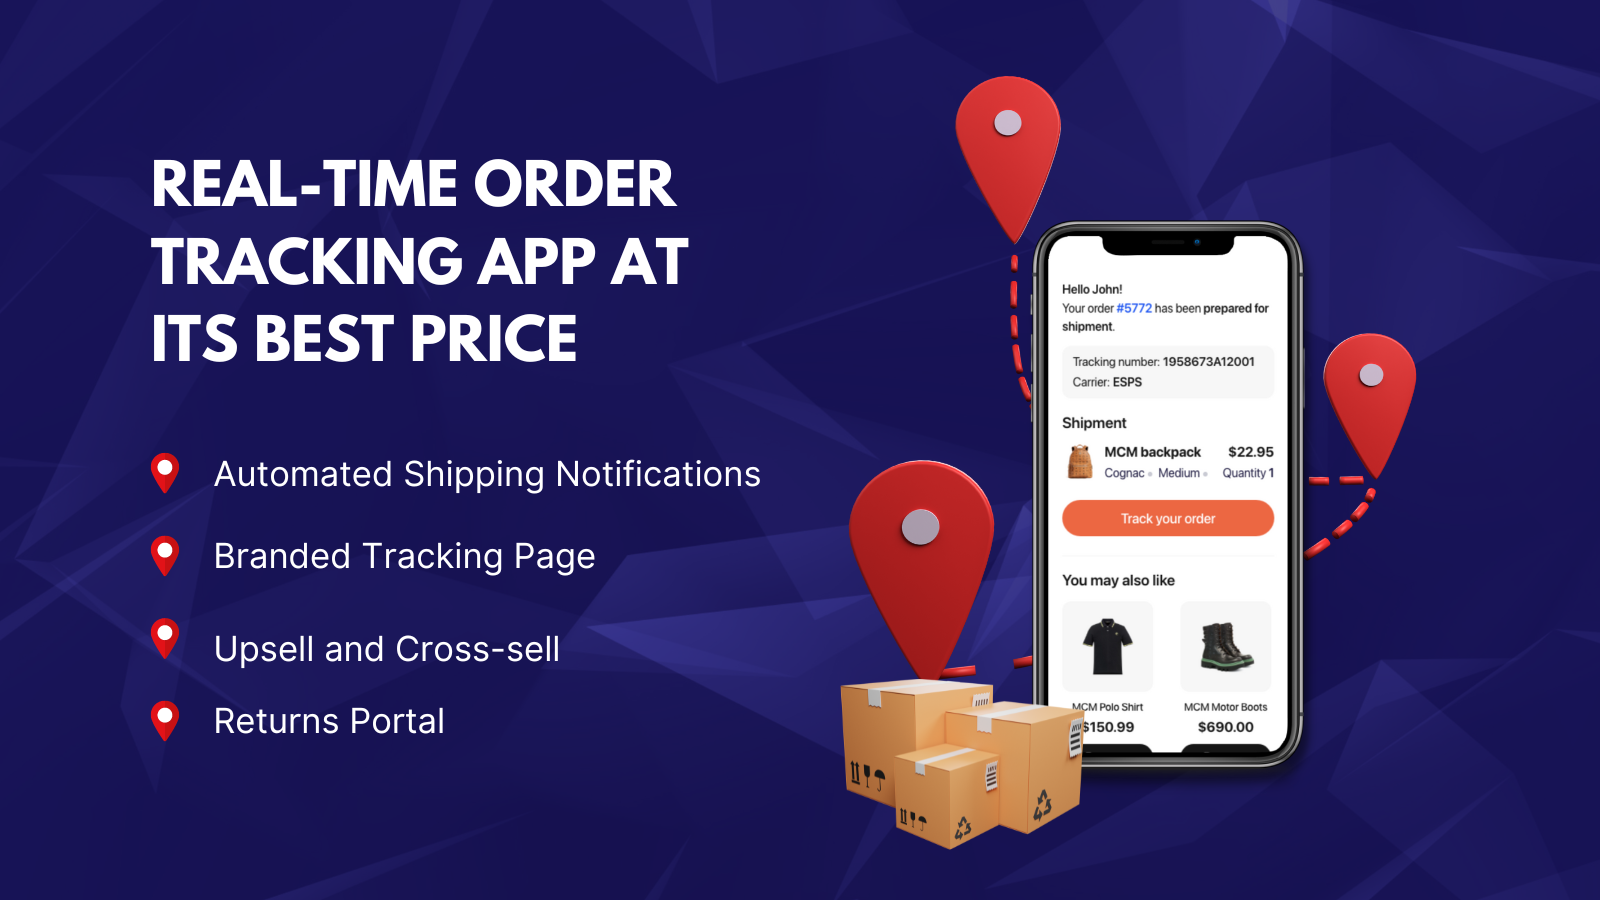 Trackr app's ordre tracker interface på detaljeret ordre sporing